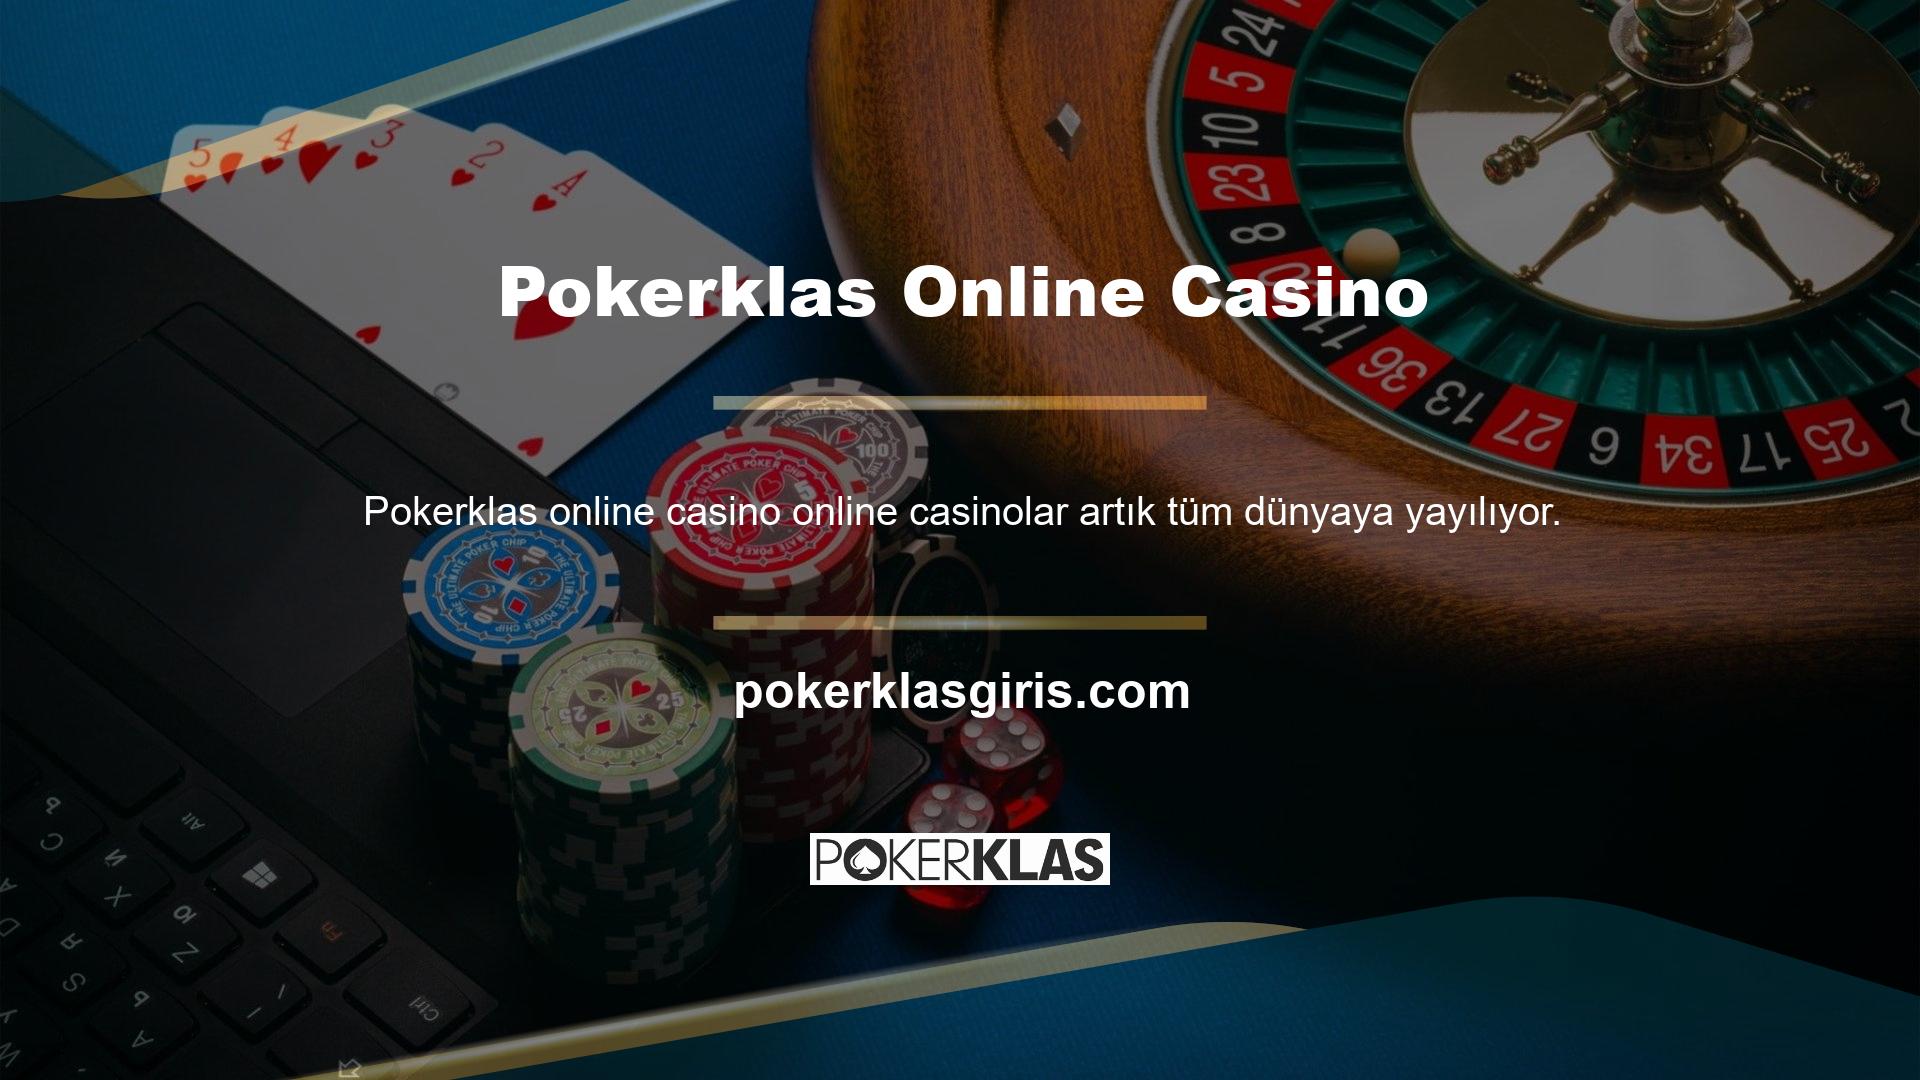 Canlı bahis, Türk bahis meraklıları arasında yaygın olarak kullanılan bir tekniktir ve Pokerklas, alanının en iyilerinden biridir